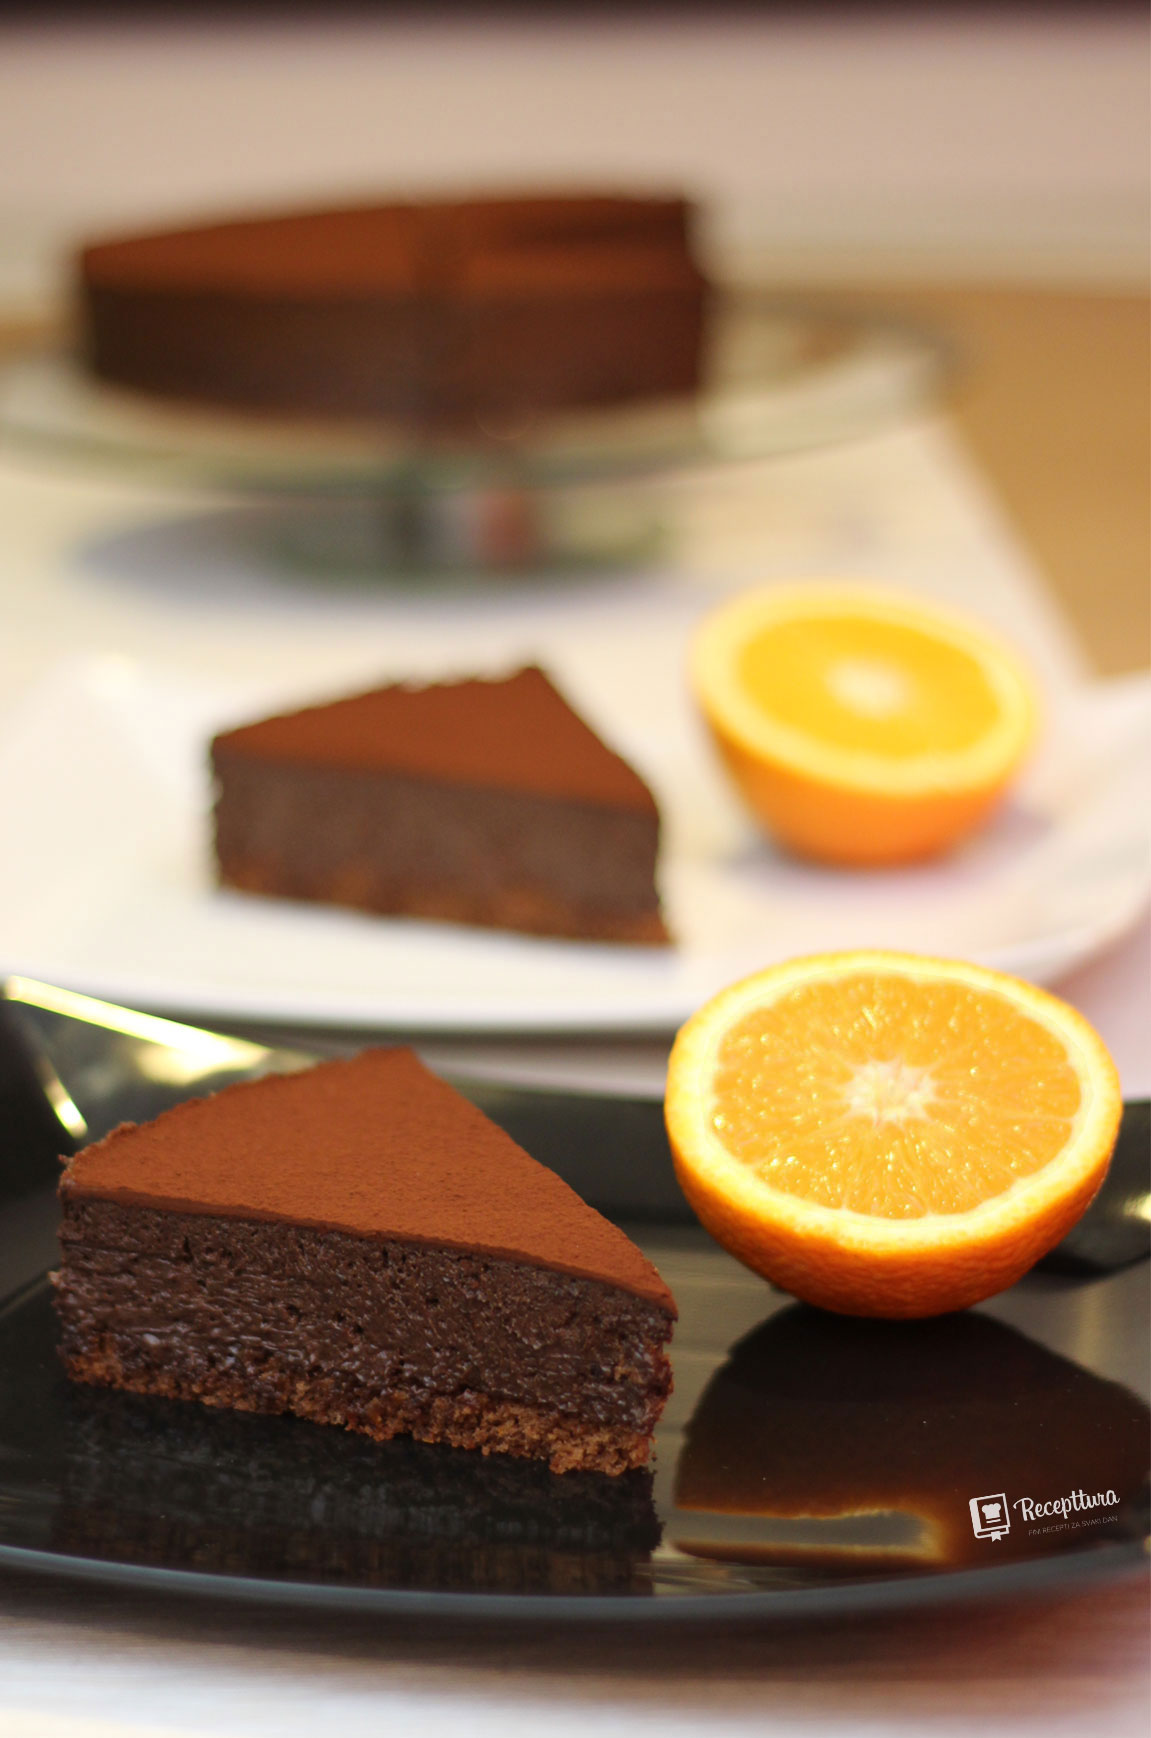 Torta od čokolade i naranče ukrašena je s kakaom u prahu.